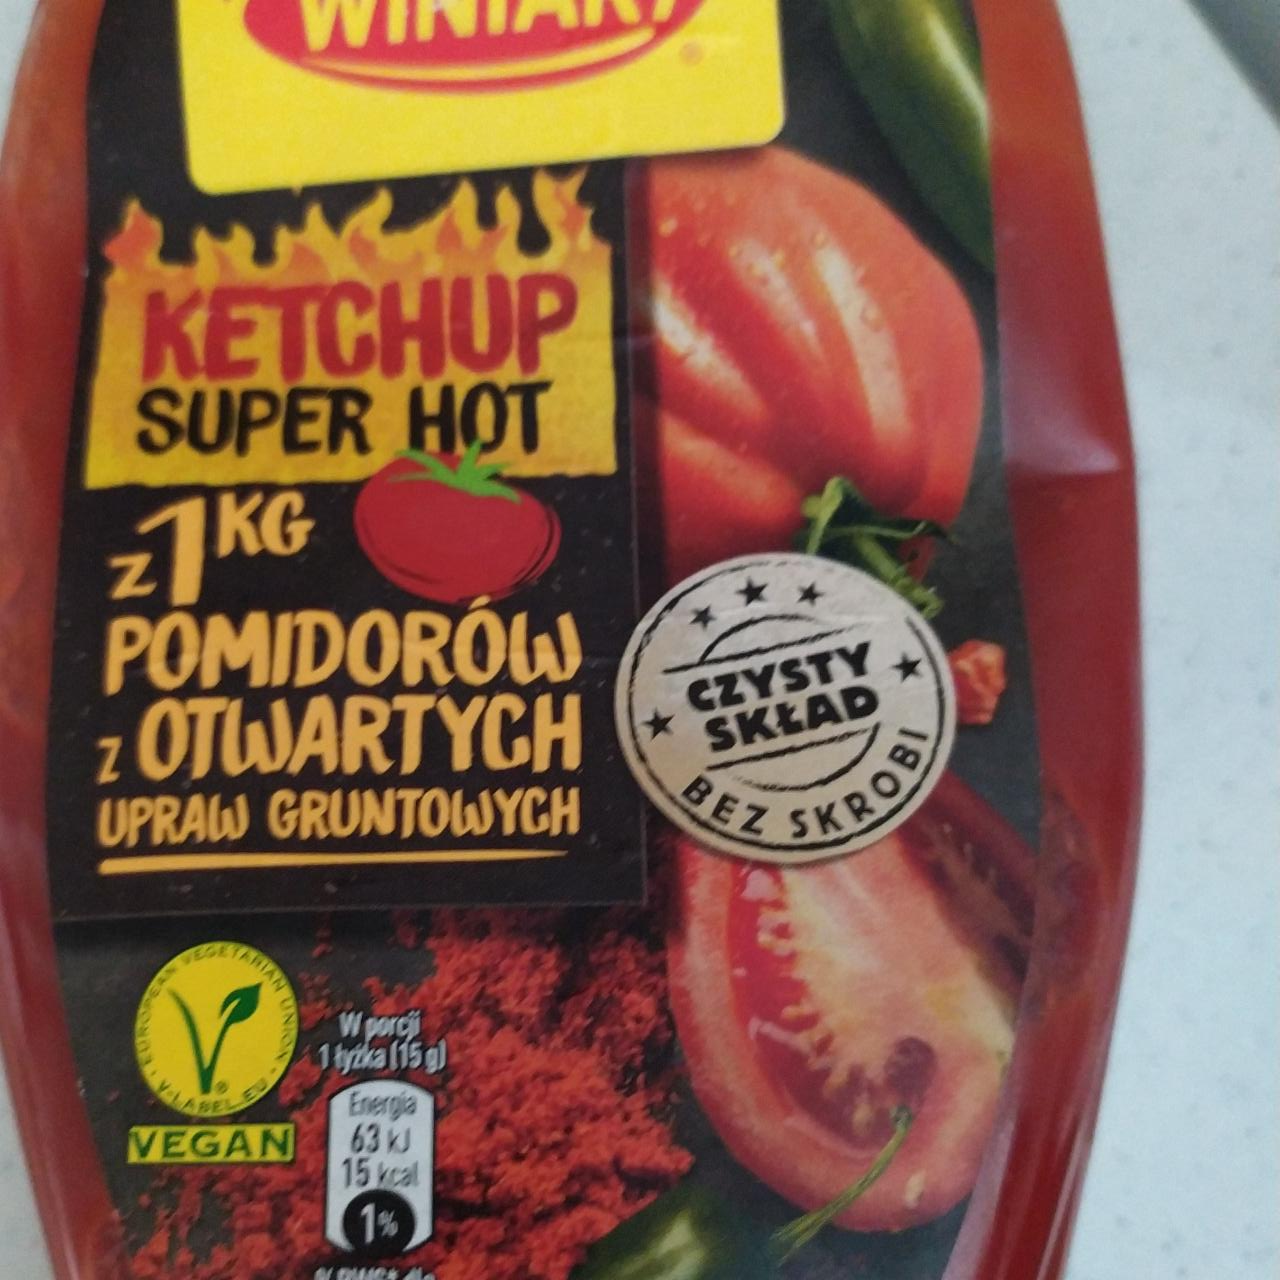 Zdjęcia - Ketchup Super hot z Pomidorow z Otwartych upraw gruntowych Winiary